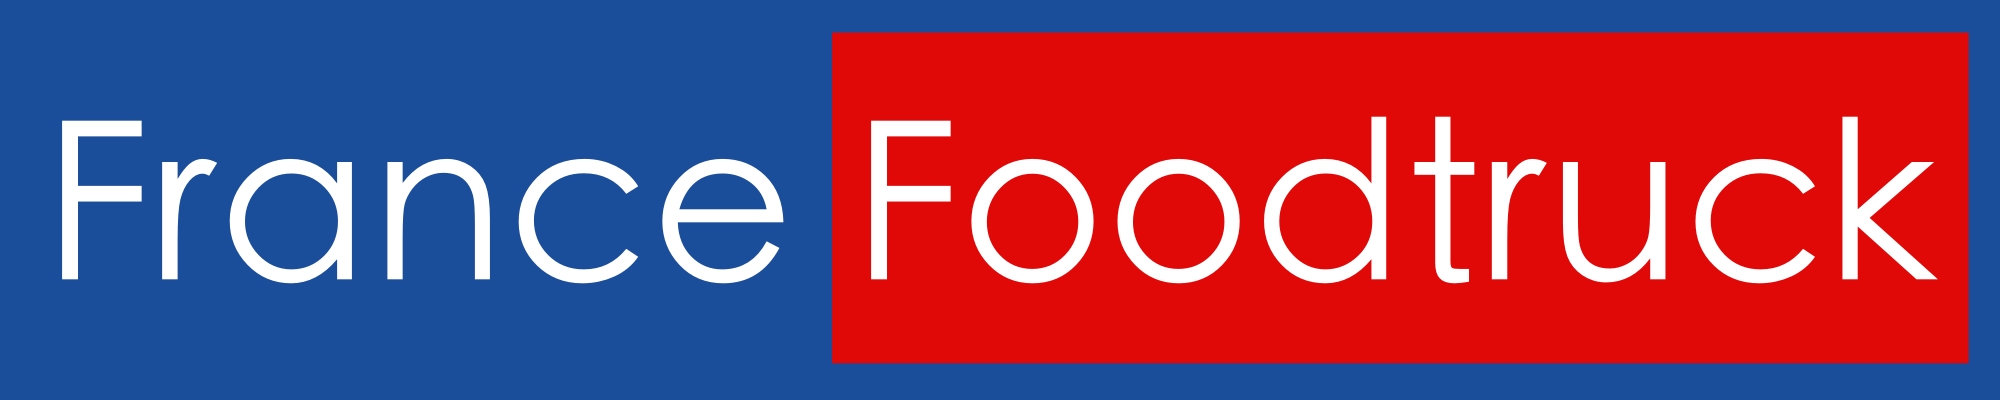 LOGO FRANCE FOODTRUCK